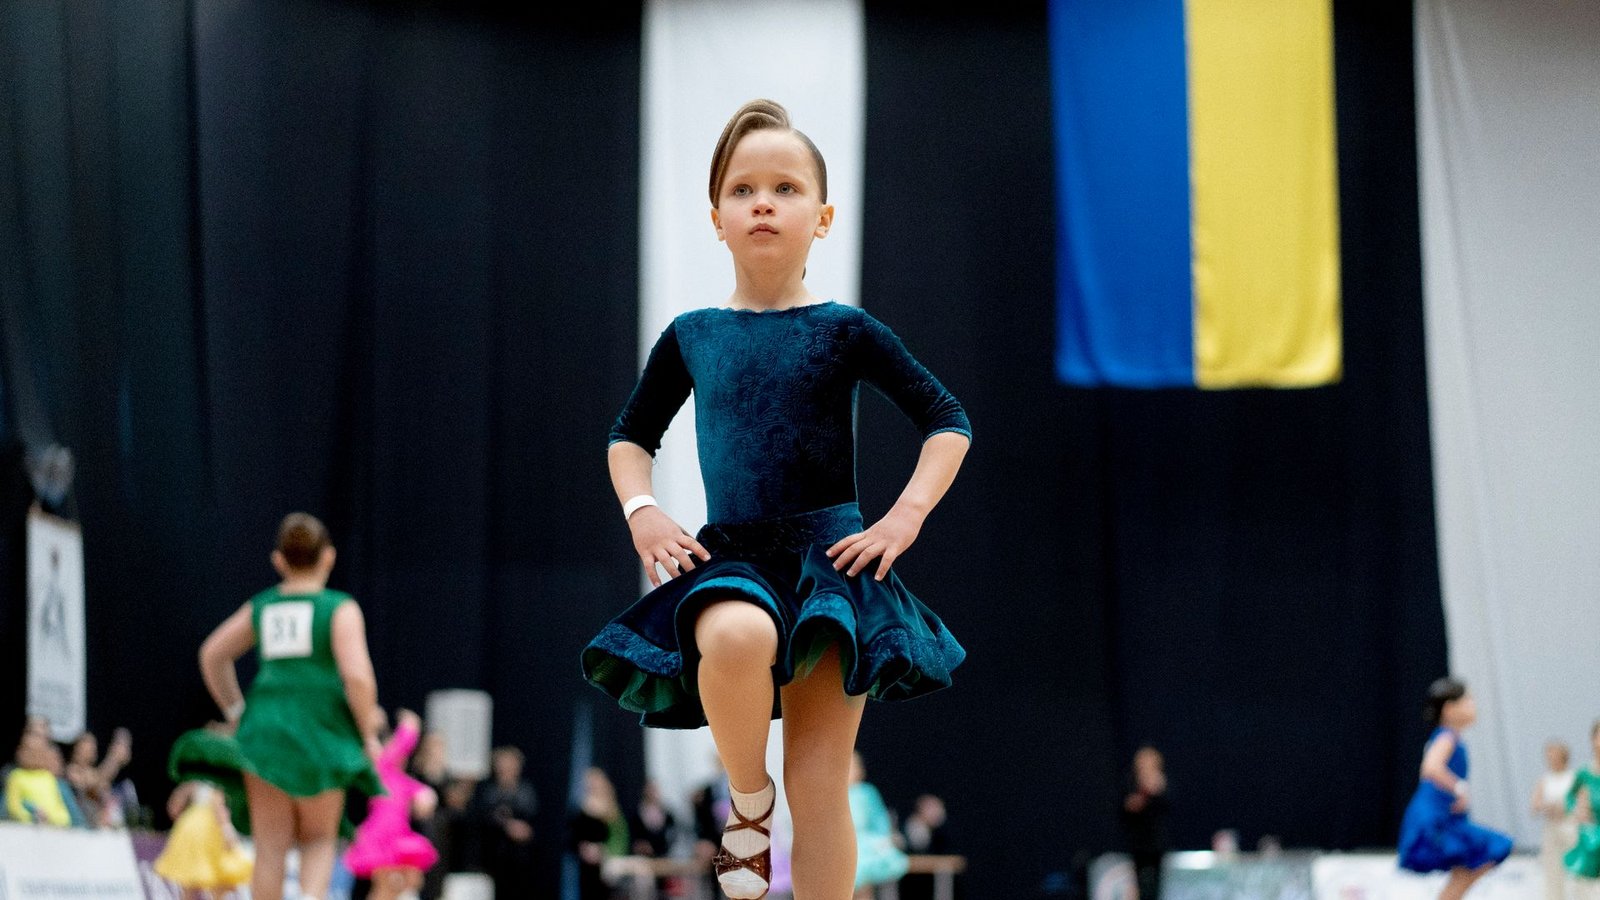 Ein wenig Normalität inmitten des russischen Angriffskriegs: Die siebenjährige Alice tritt bei einem Tanzfestival in Kiew auf.Foto: Roman Hrytsyna/AP/dpa